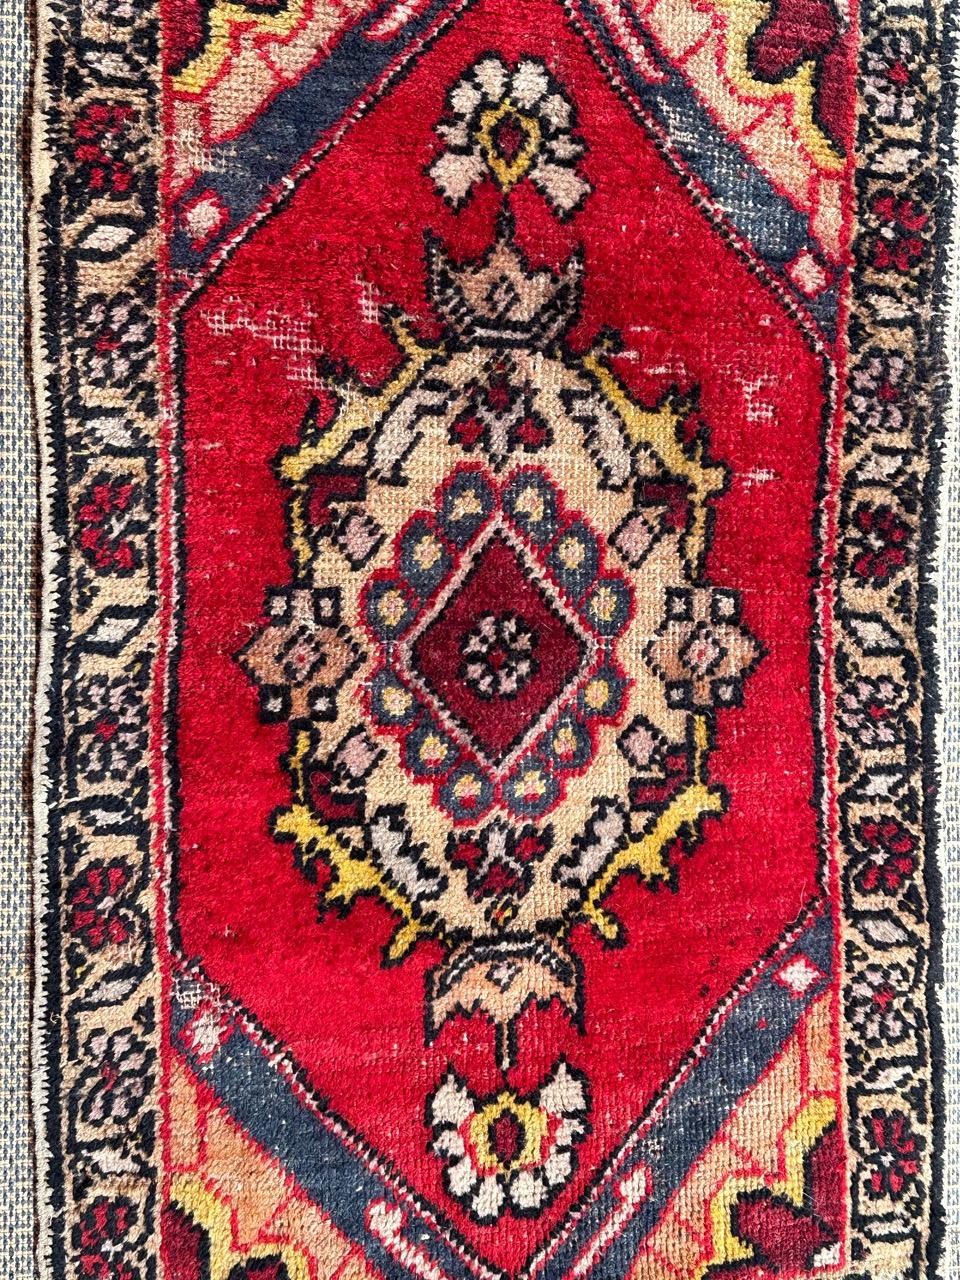 Hübscher kleiner türkischer Teppich mit schönem geometrischem Muster und schönen Farben, komplett handgeknüpft mit Wolle auf Baumwollbasis 
Trägt 

✨✨✨
